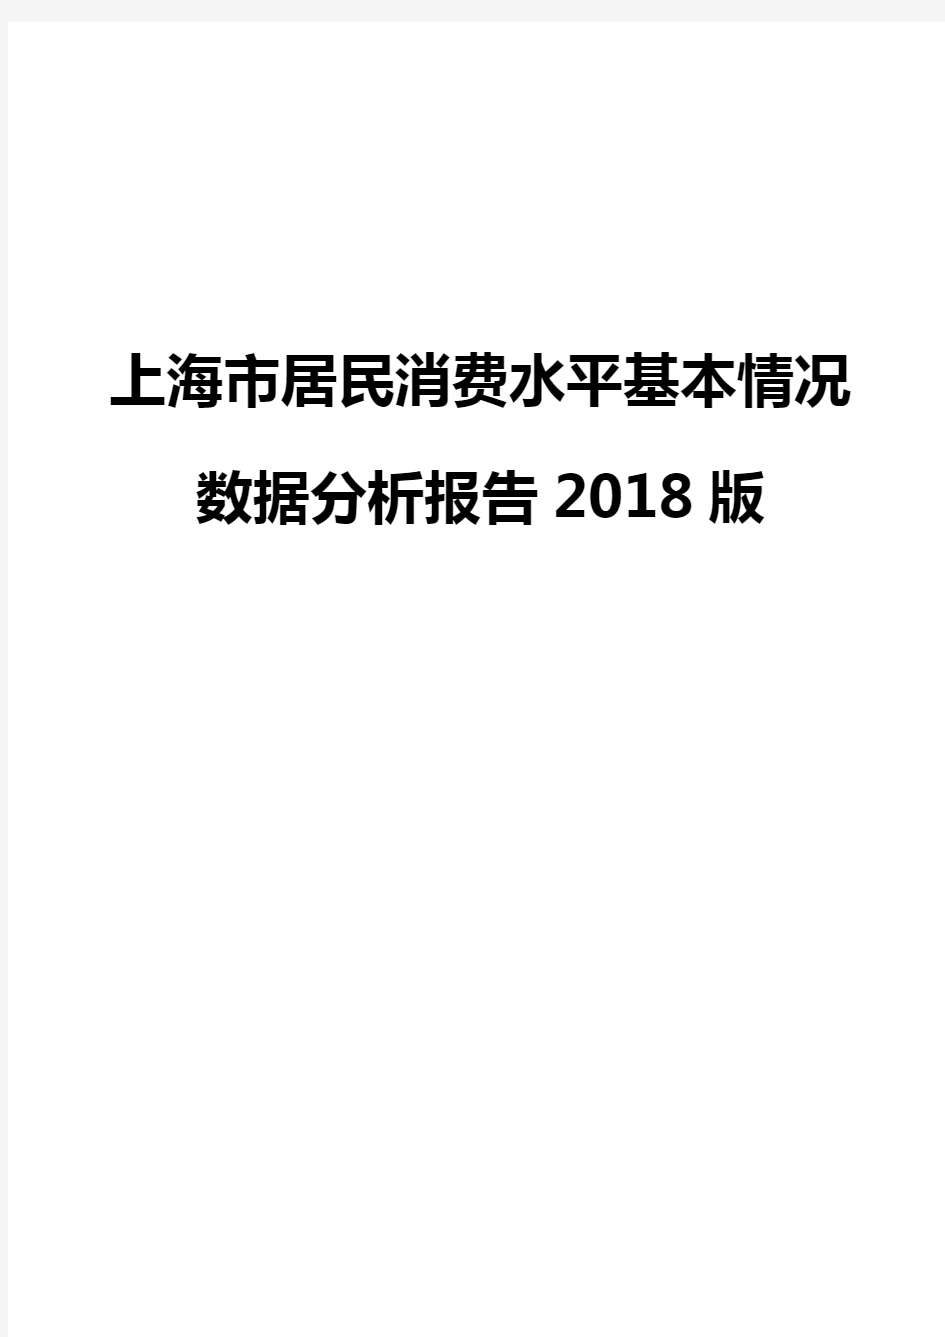 上海市居民消费水平基本情况数据分析报告2018版